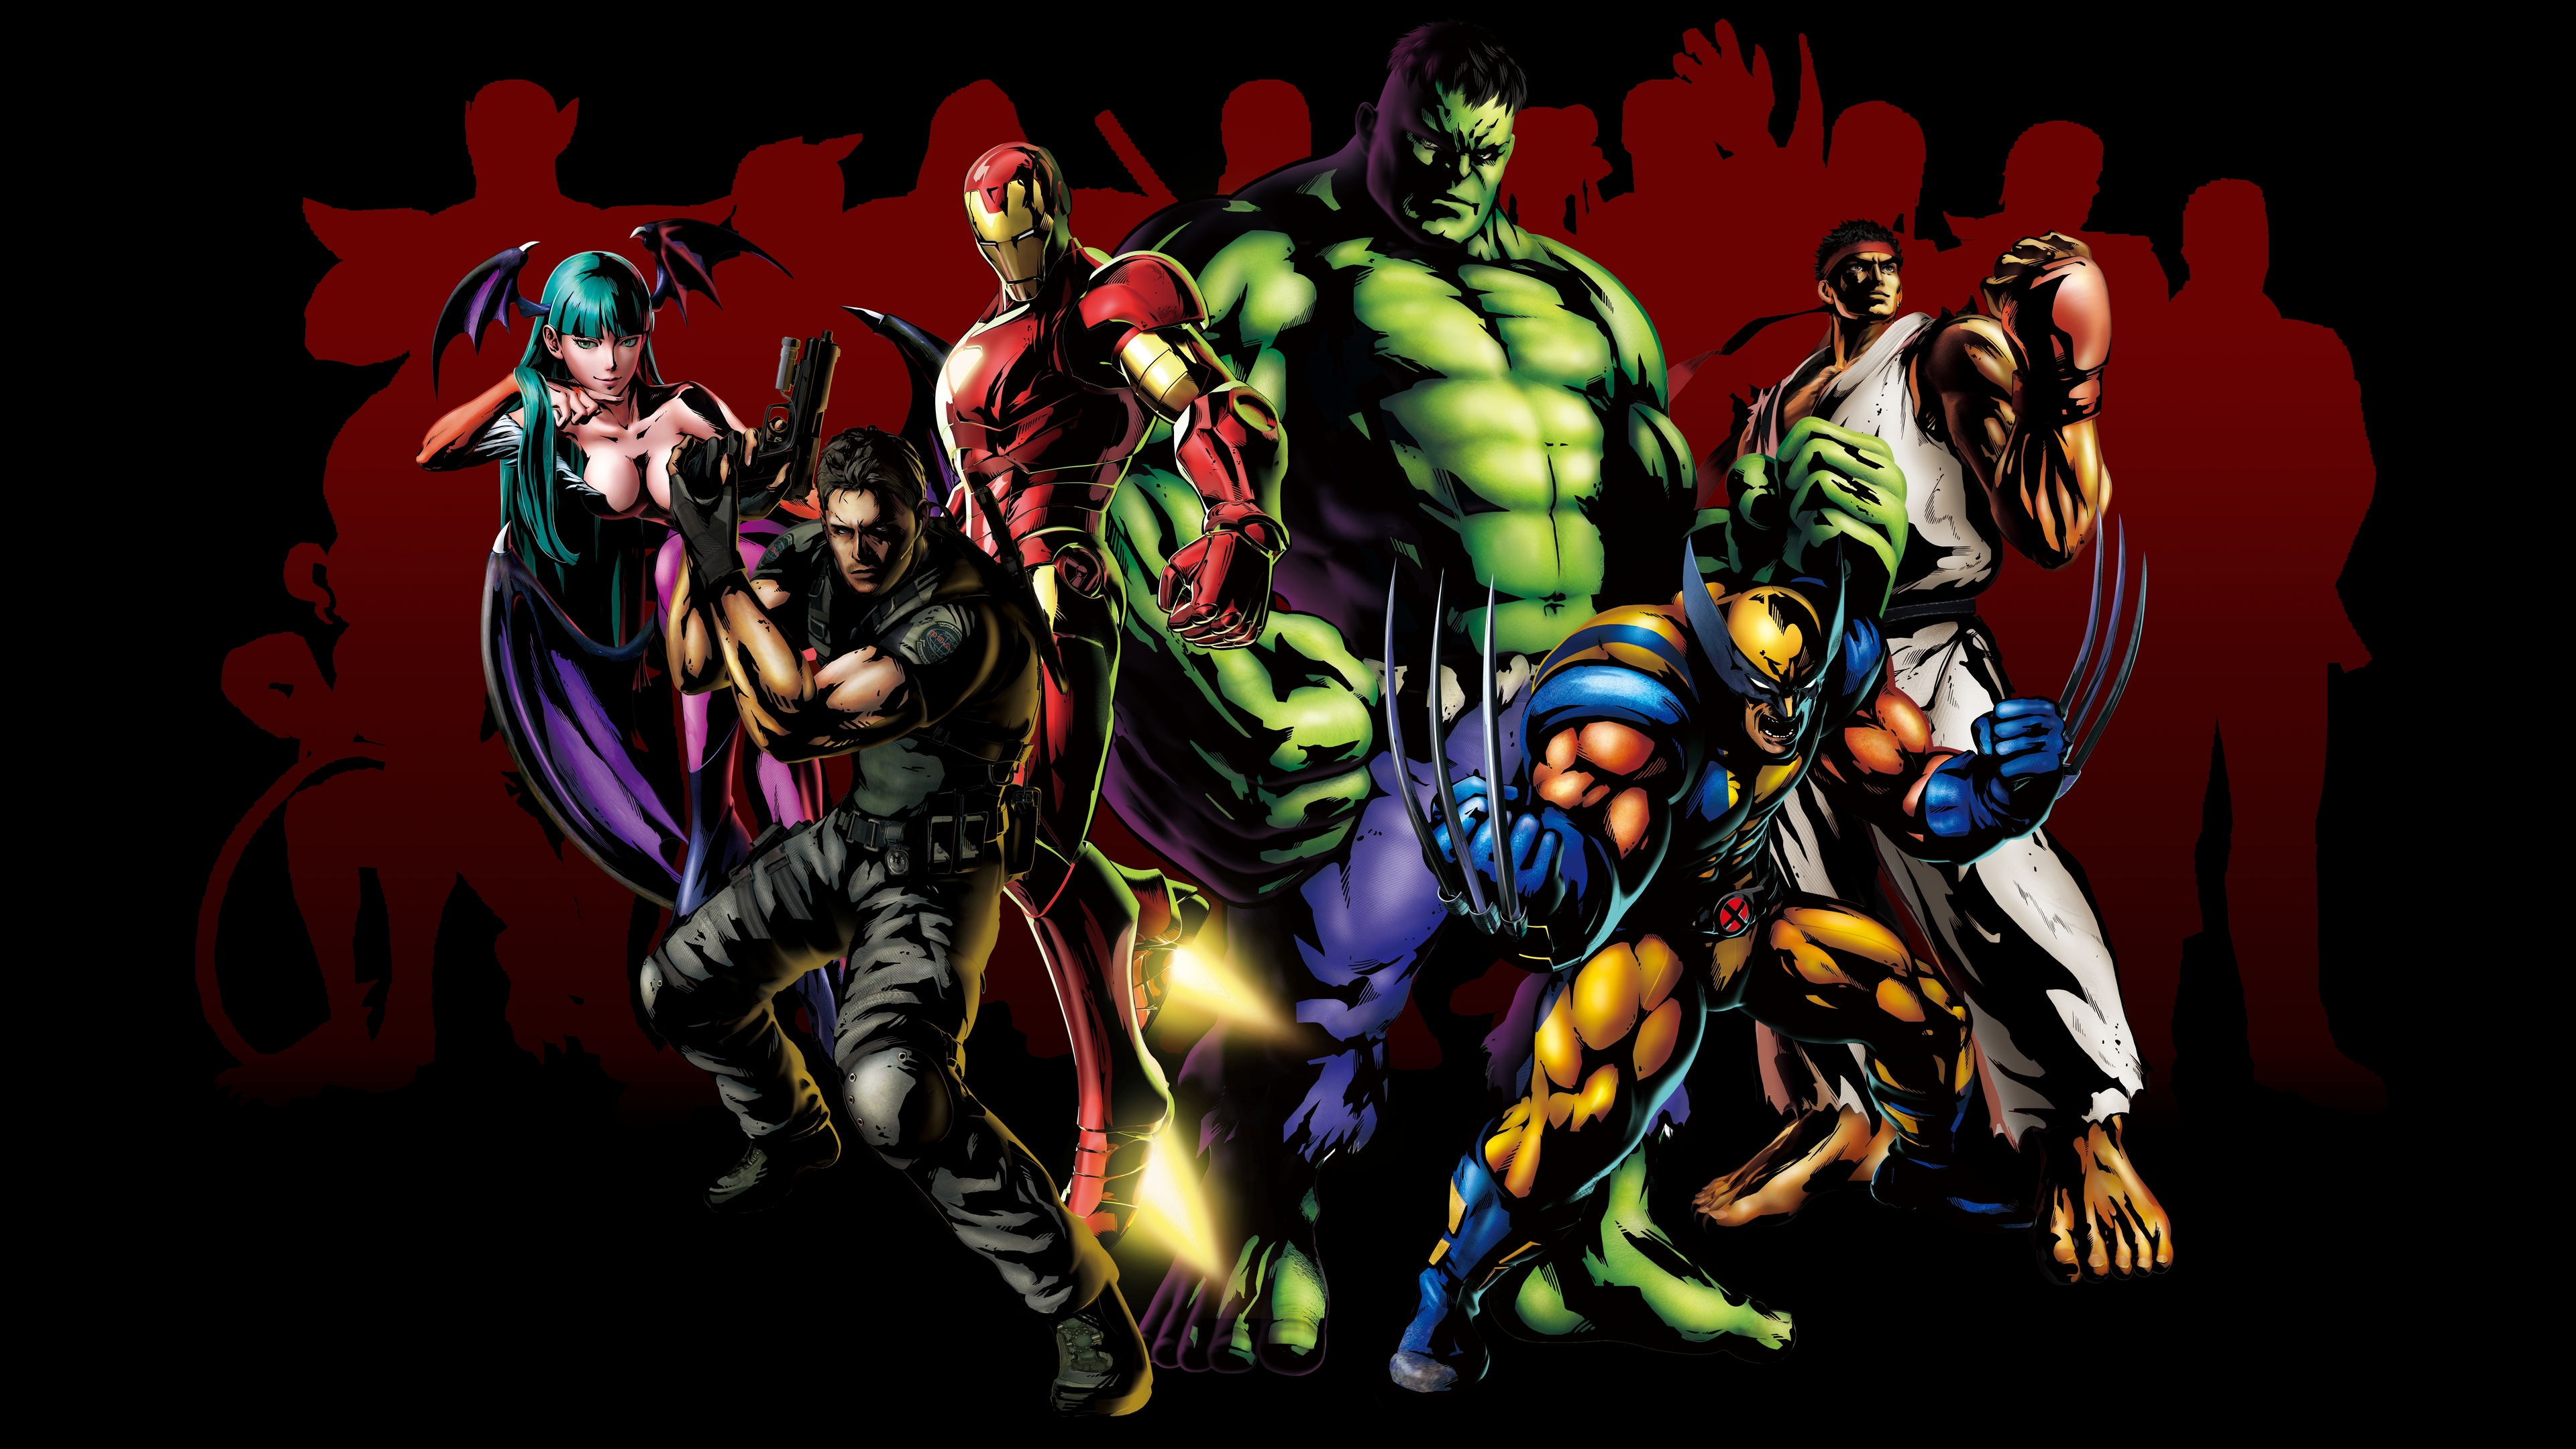 Blog do Amer - Cultura Pop por quilo!!!: Crítica do Amer: Marvel vs Capcom  3: Fate of Two Worlds